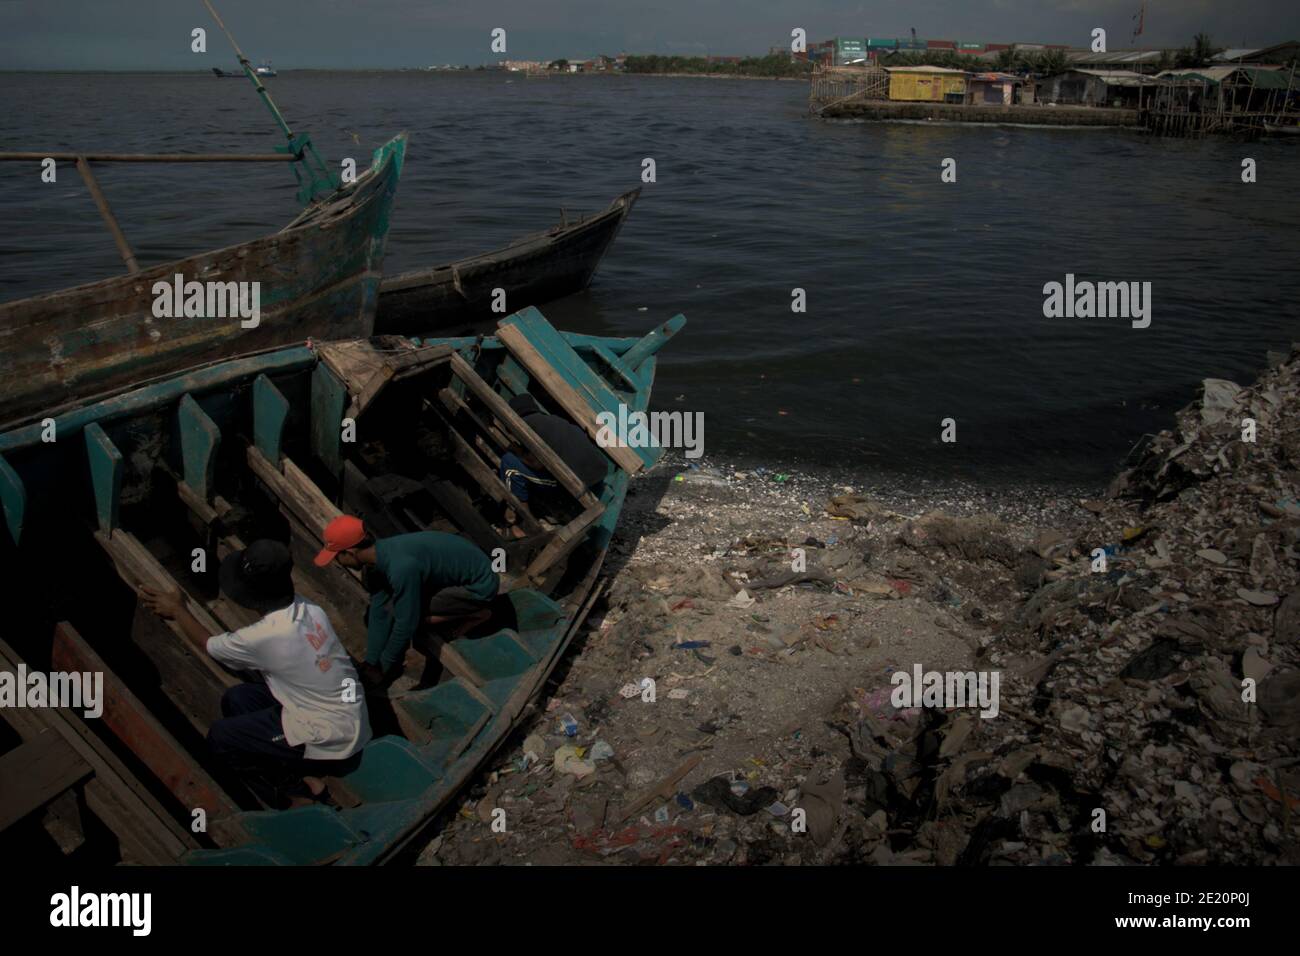 Des hommes réparent un bateau de pêche à Cilincing, un village de pêcheurs de la zone côtière de Jakarta, en Indonésie. Photo d'archives (2008). Banque D'Images